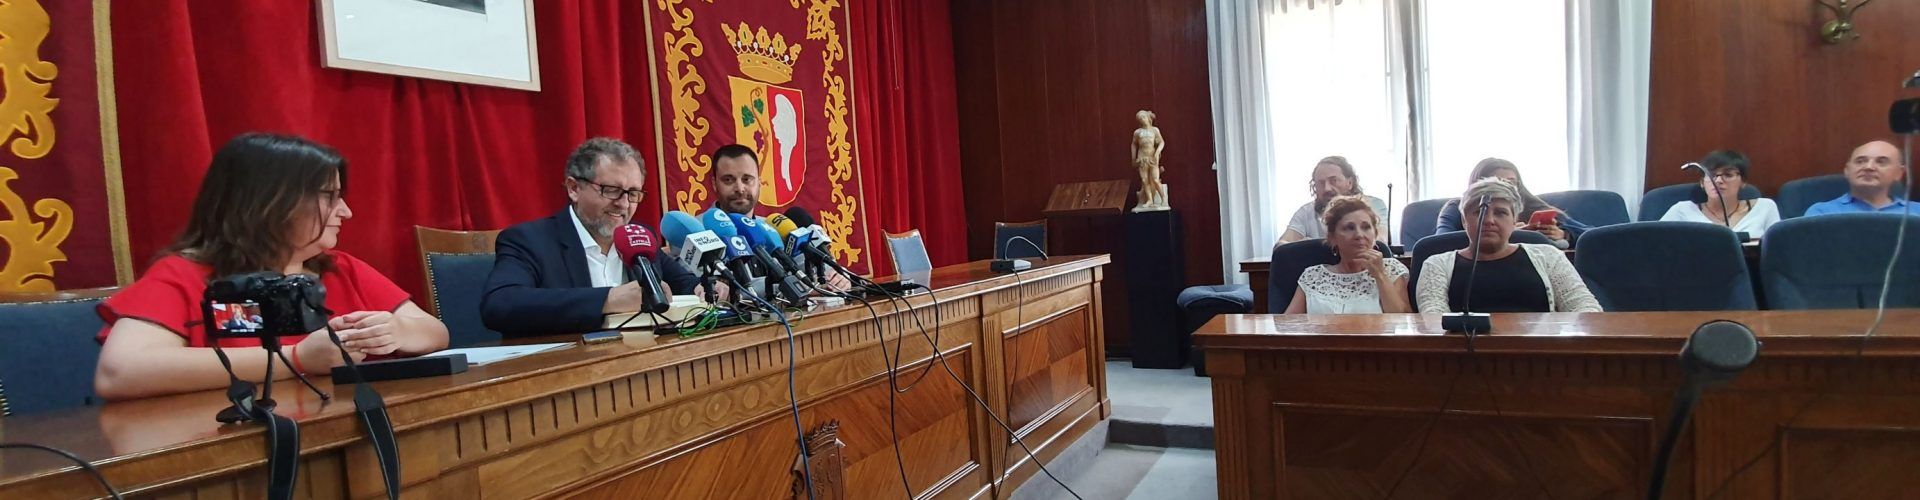 Primera visita a Vinaròs del nou president de la Diputació